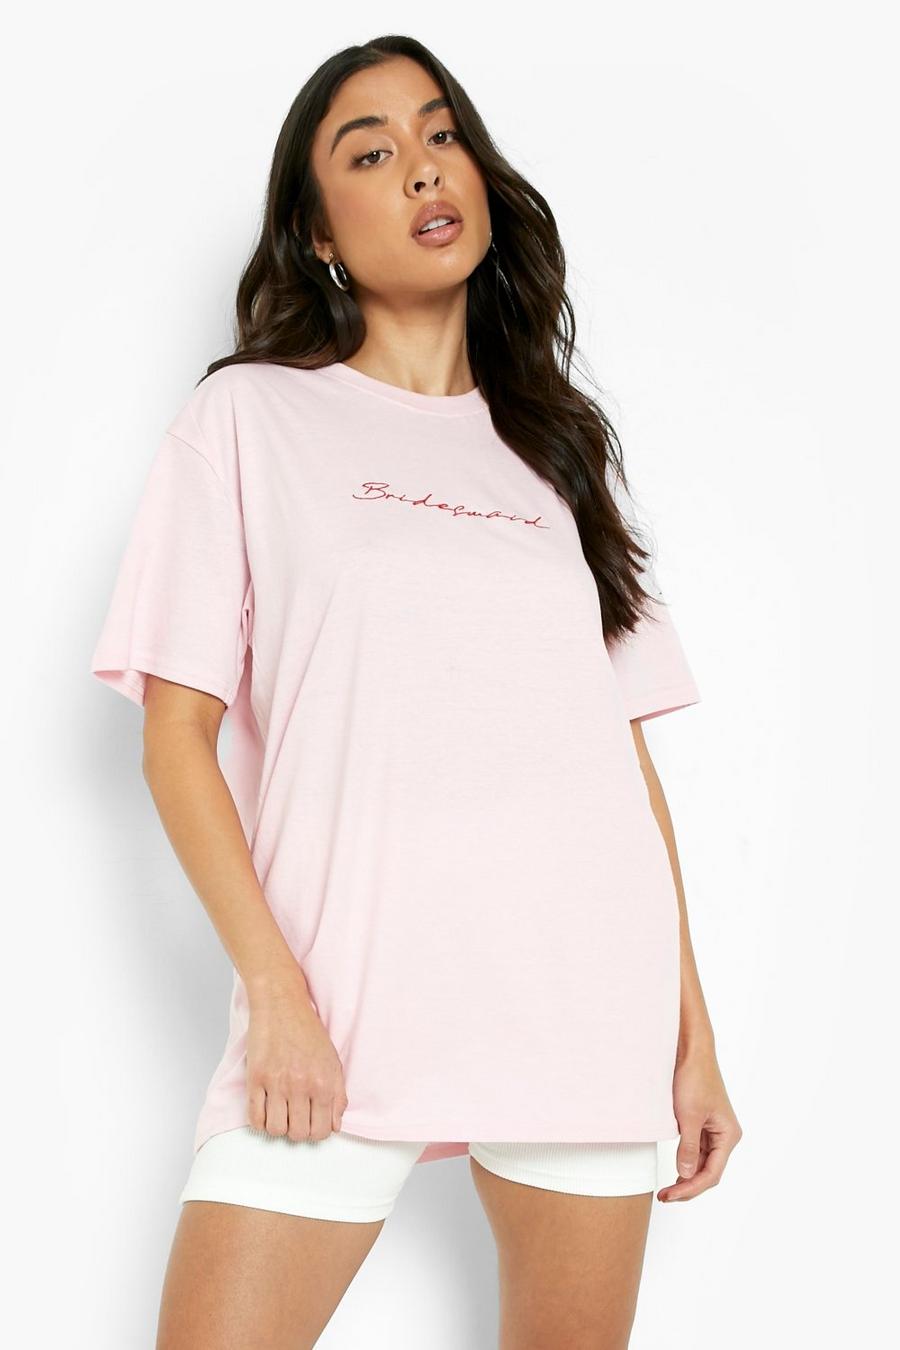 Camiseta oversize con bordado Bridesmaid, Baby pink rosa